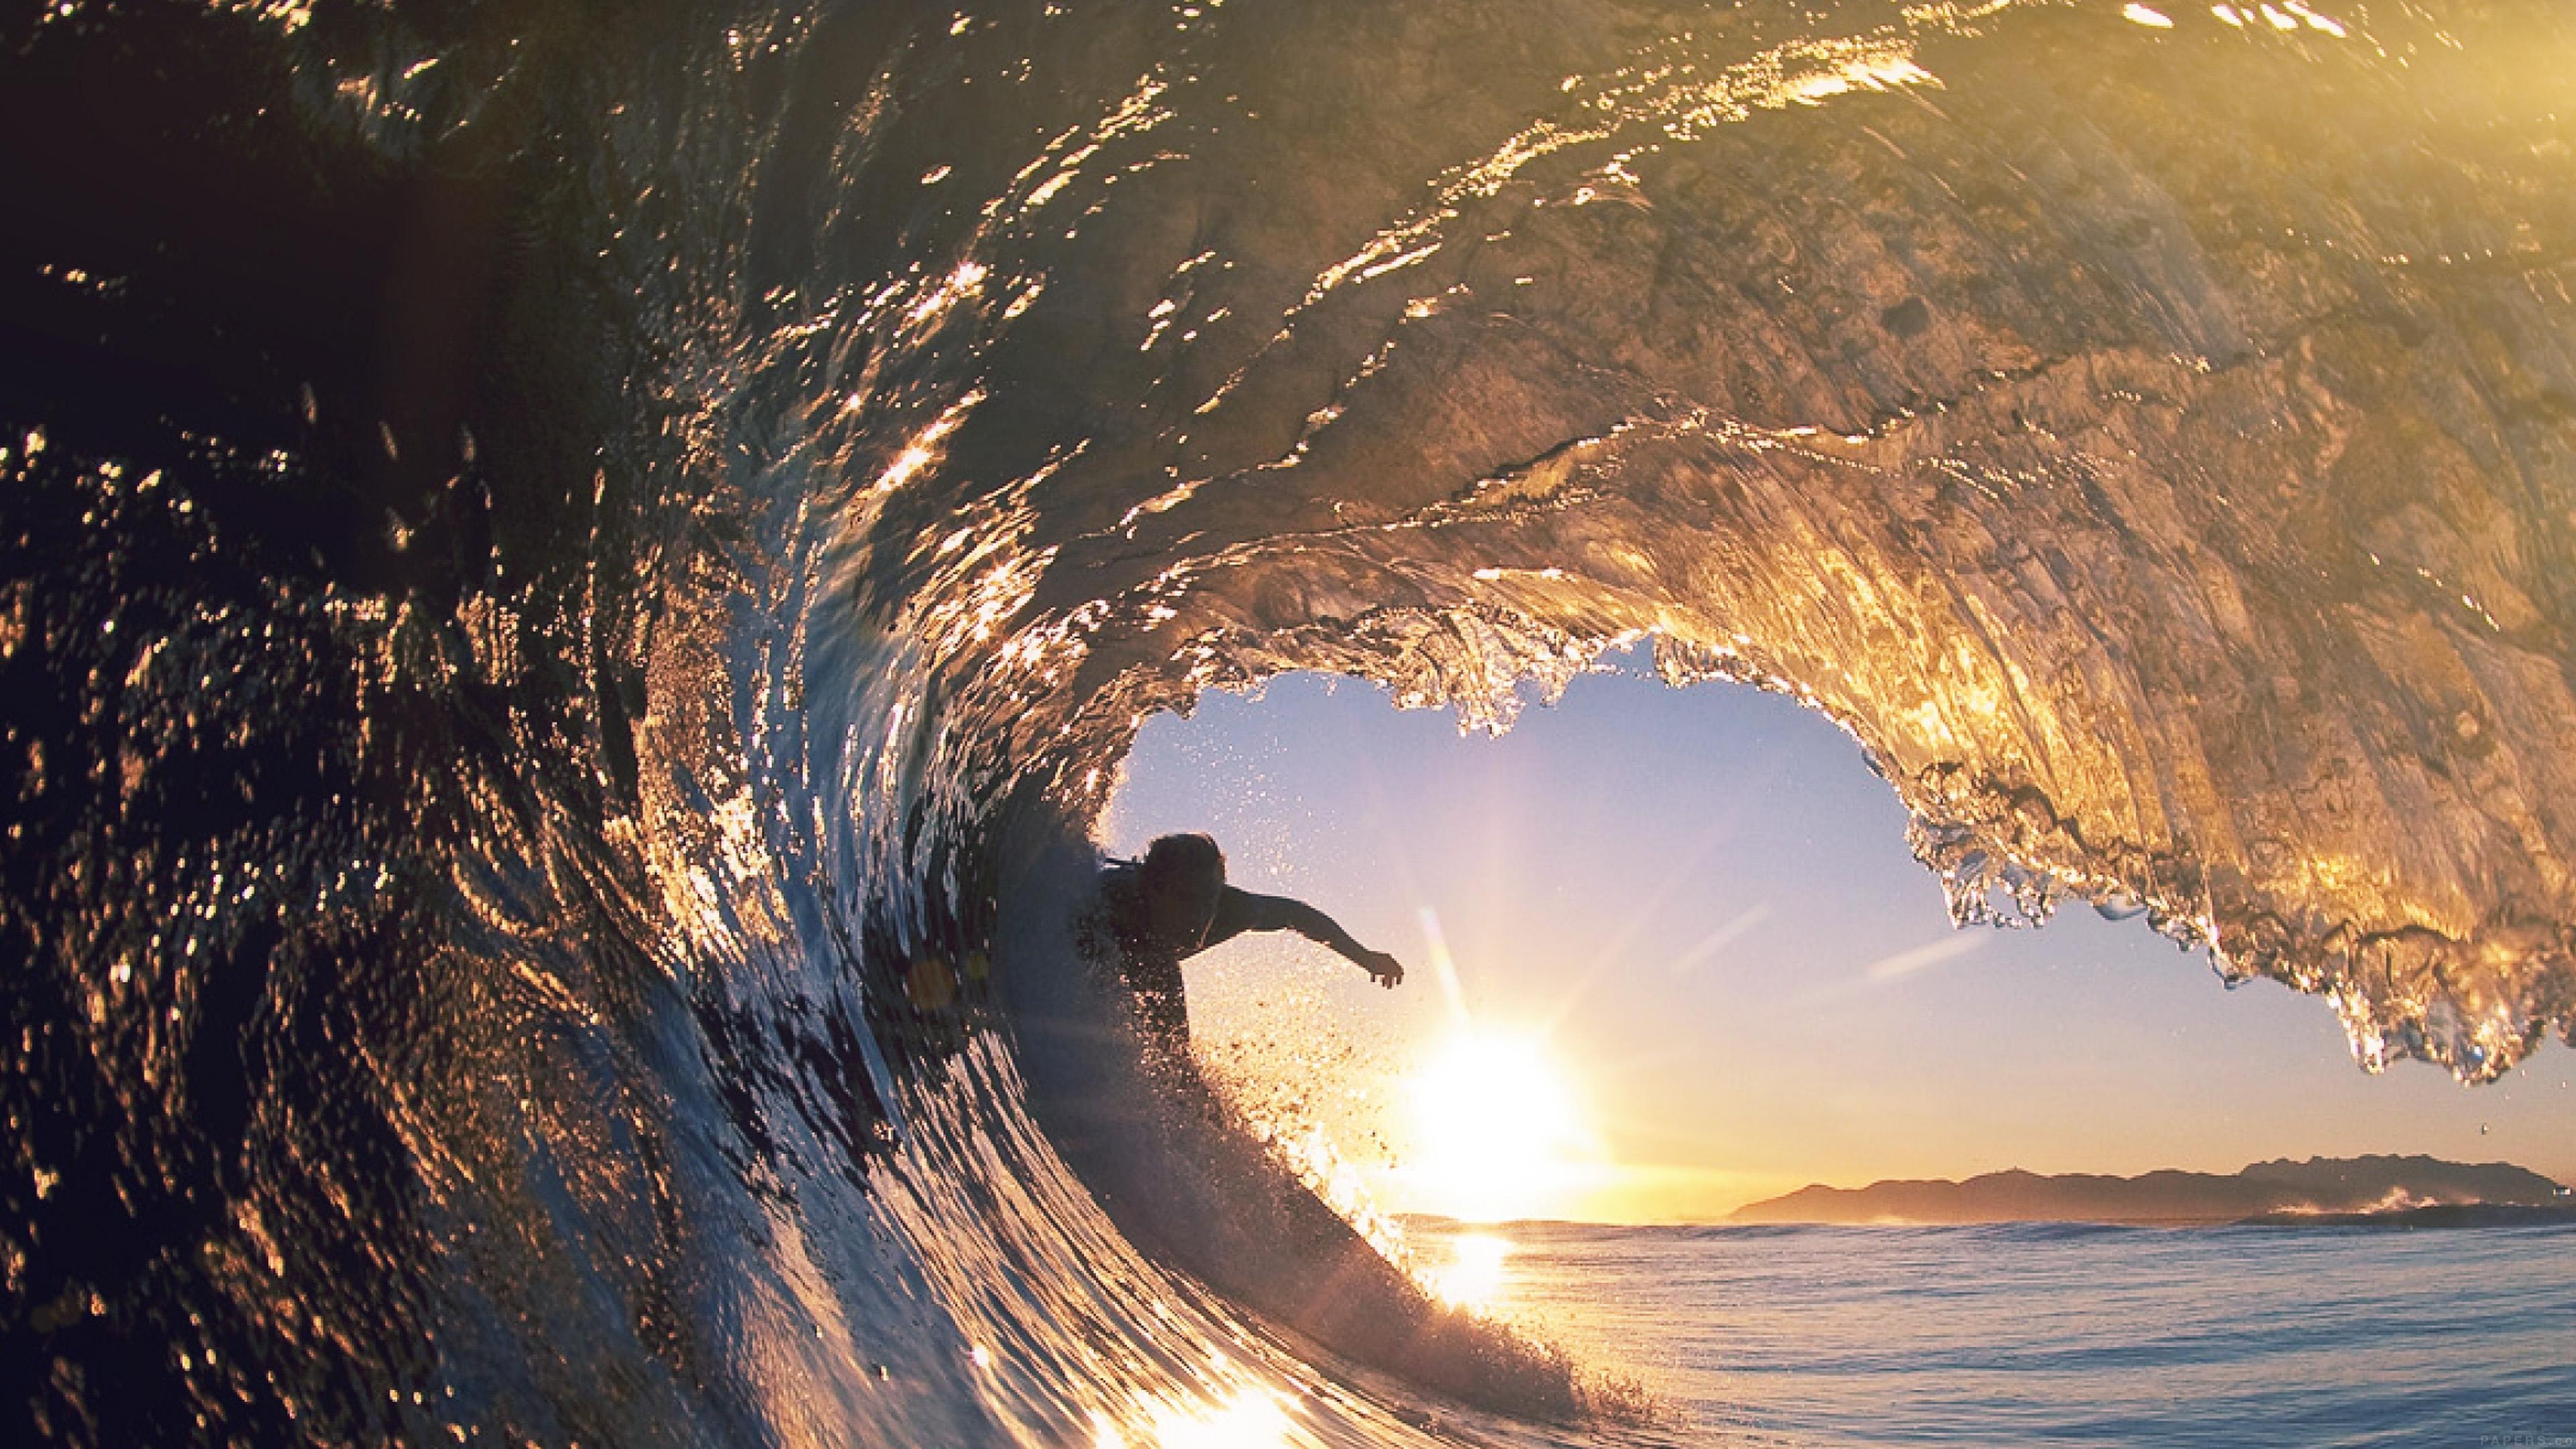 wallpaper for desktop, laptop. surf wave sea nature sunshine